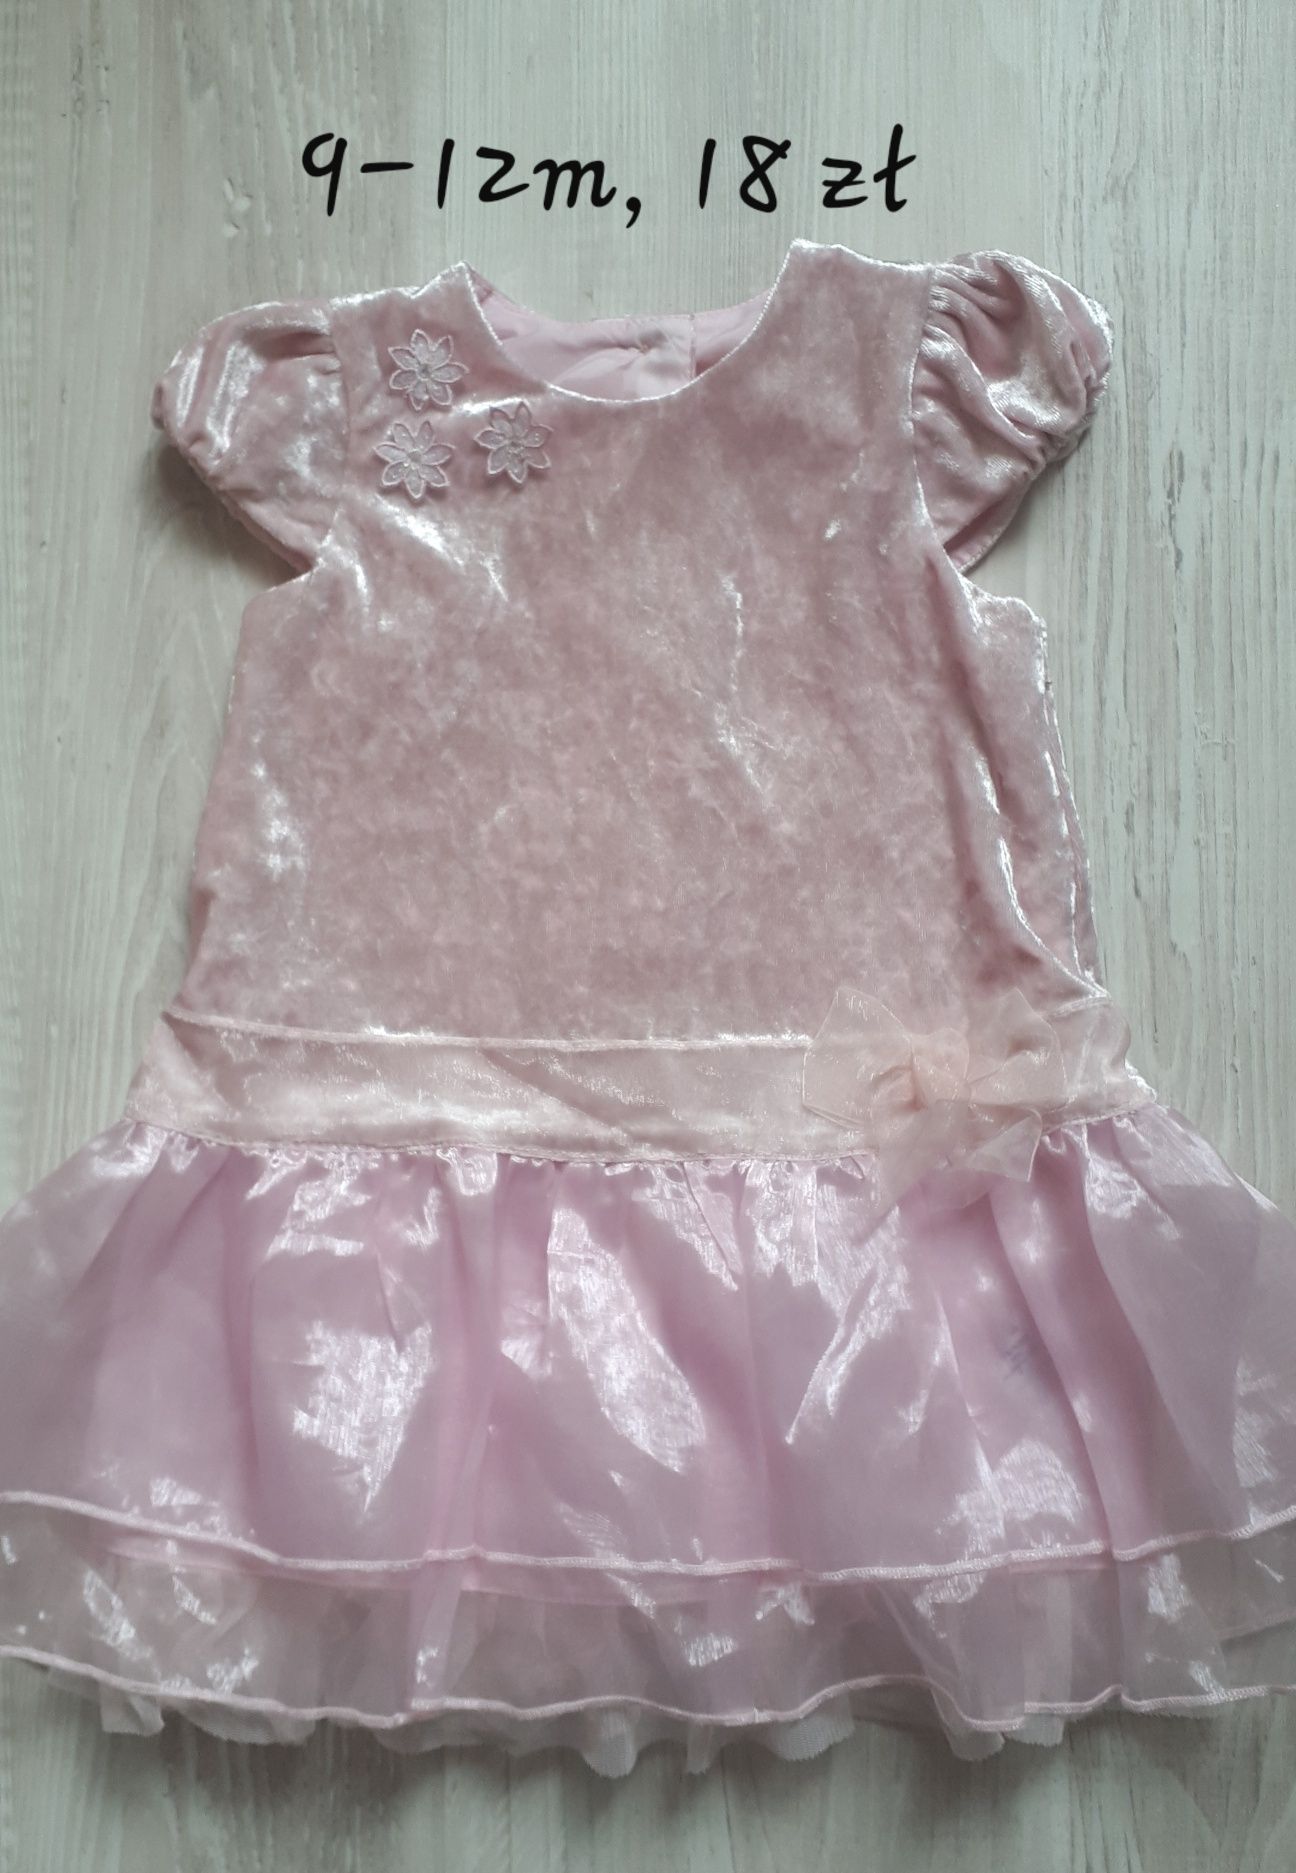 Śliczna welurowa sukienka tiul tutu 9-12 80 cm różowa pudrowy róż